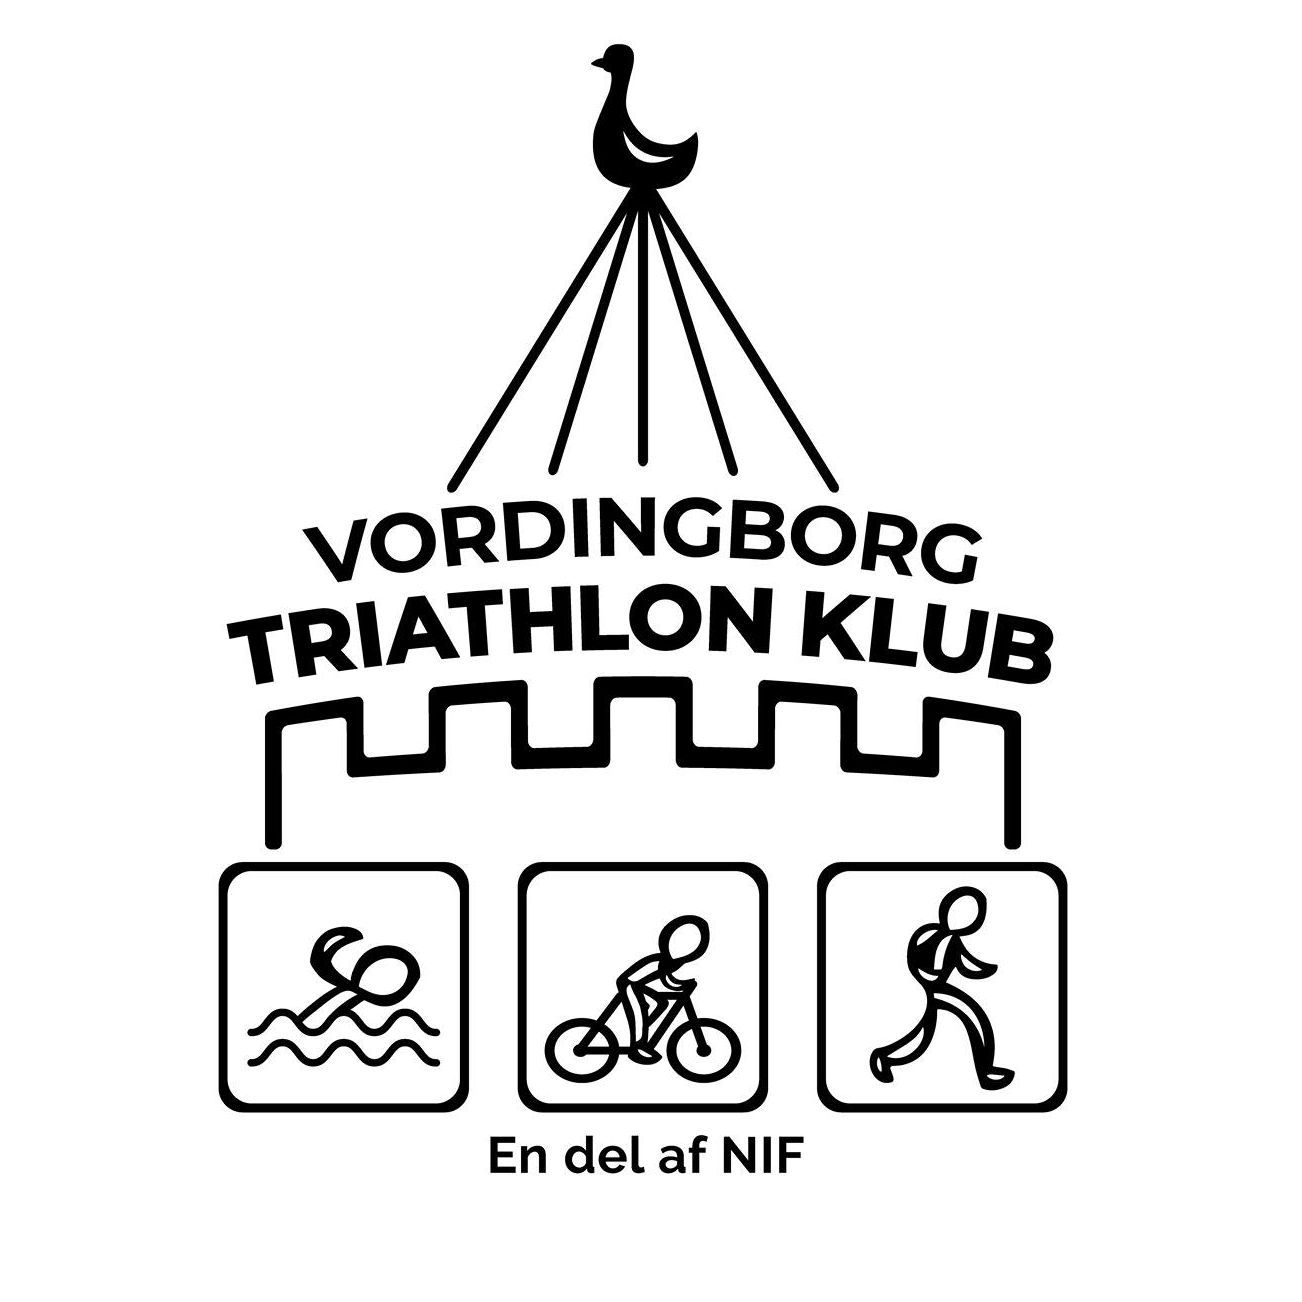 Vordingborg triathlon klub